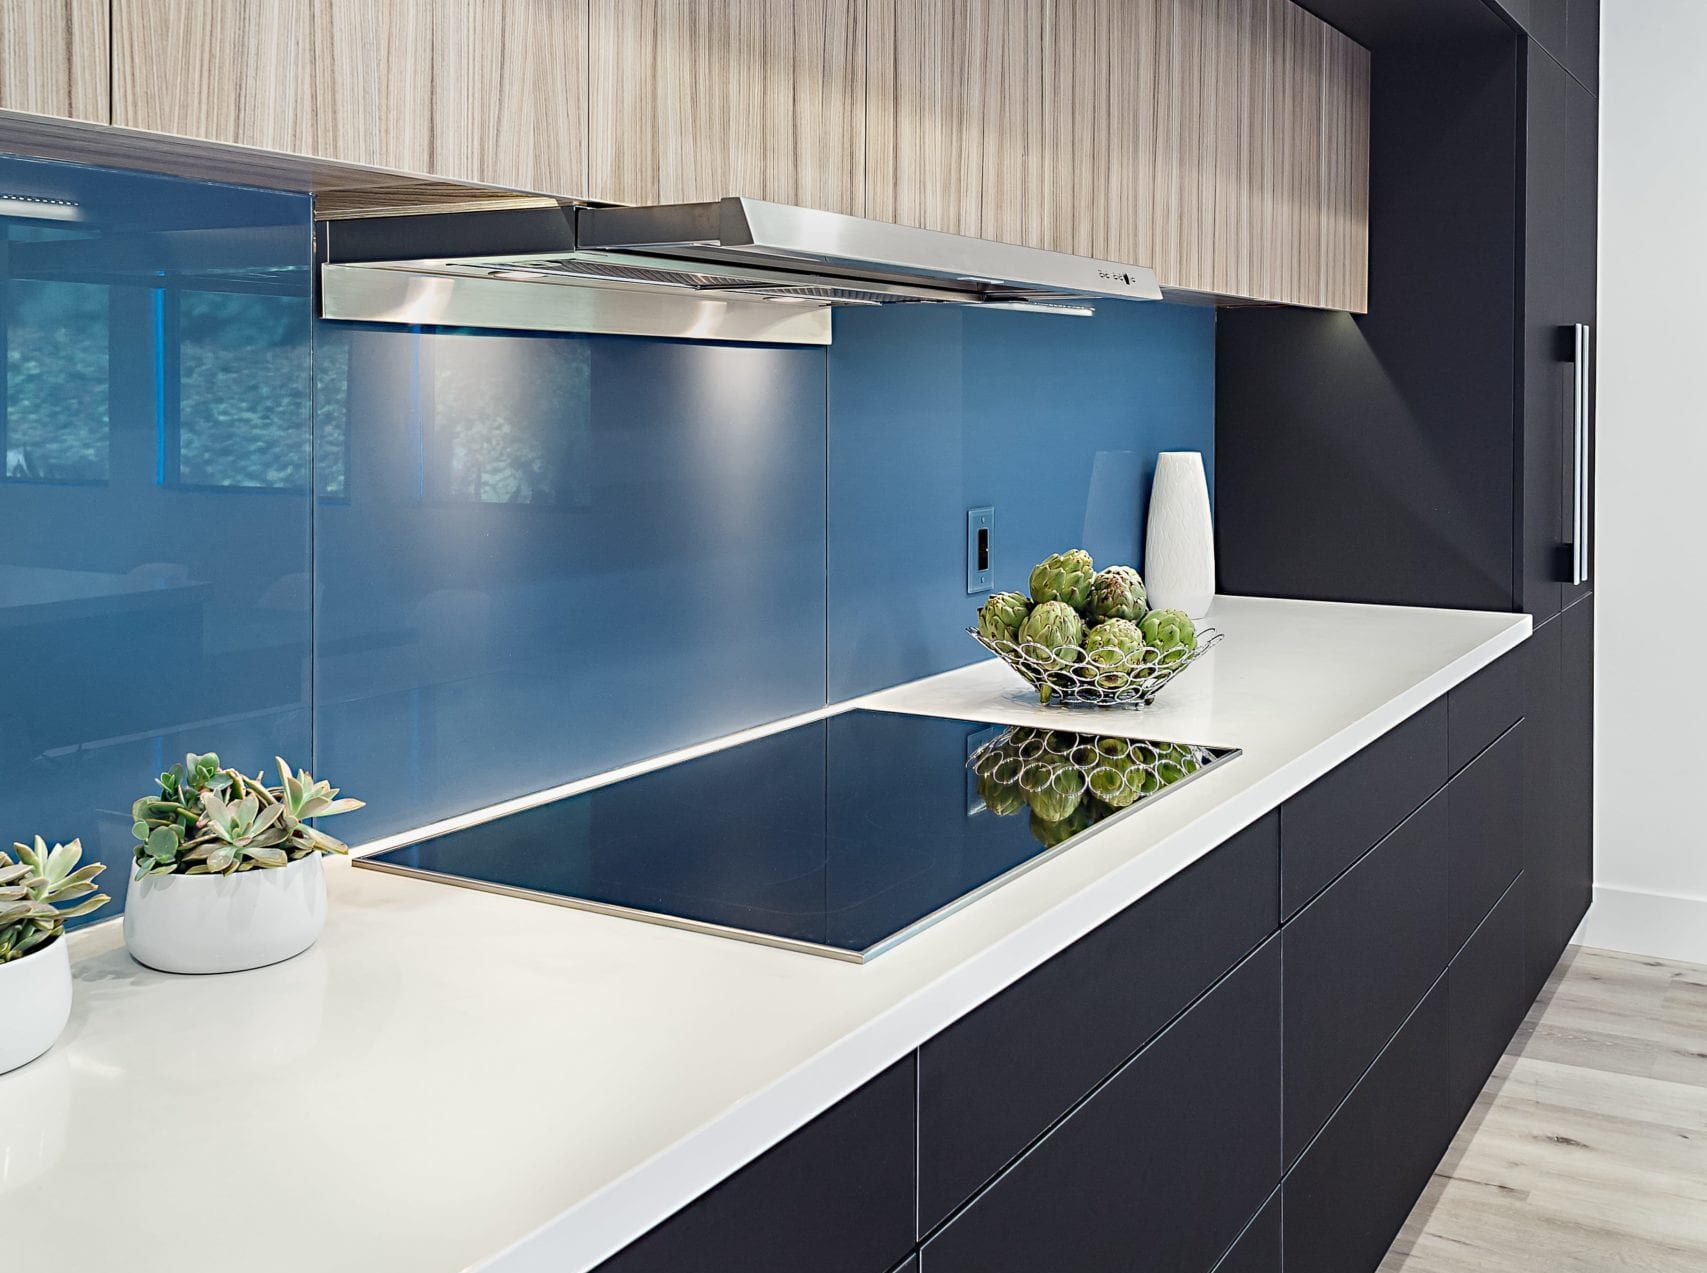 Tile backsplash and glass cabinet faces in kitchen remodel design